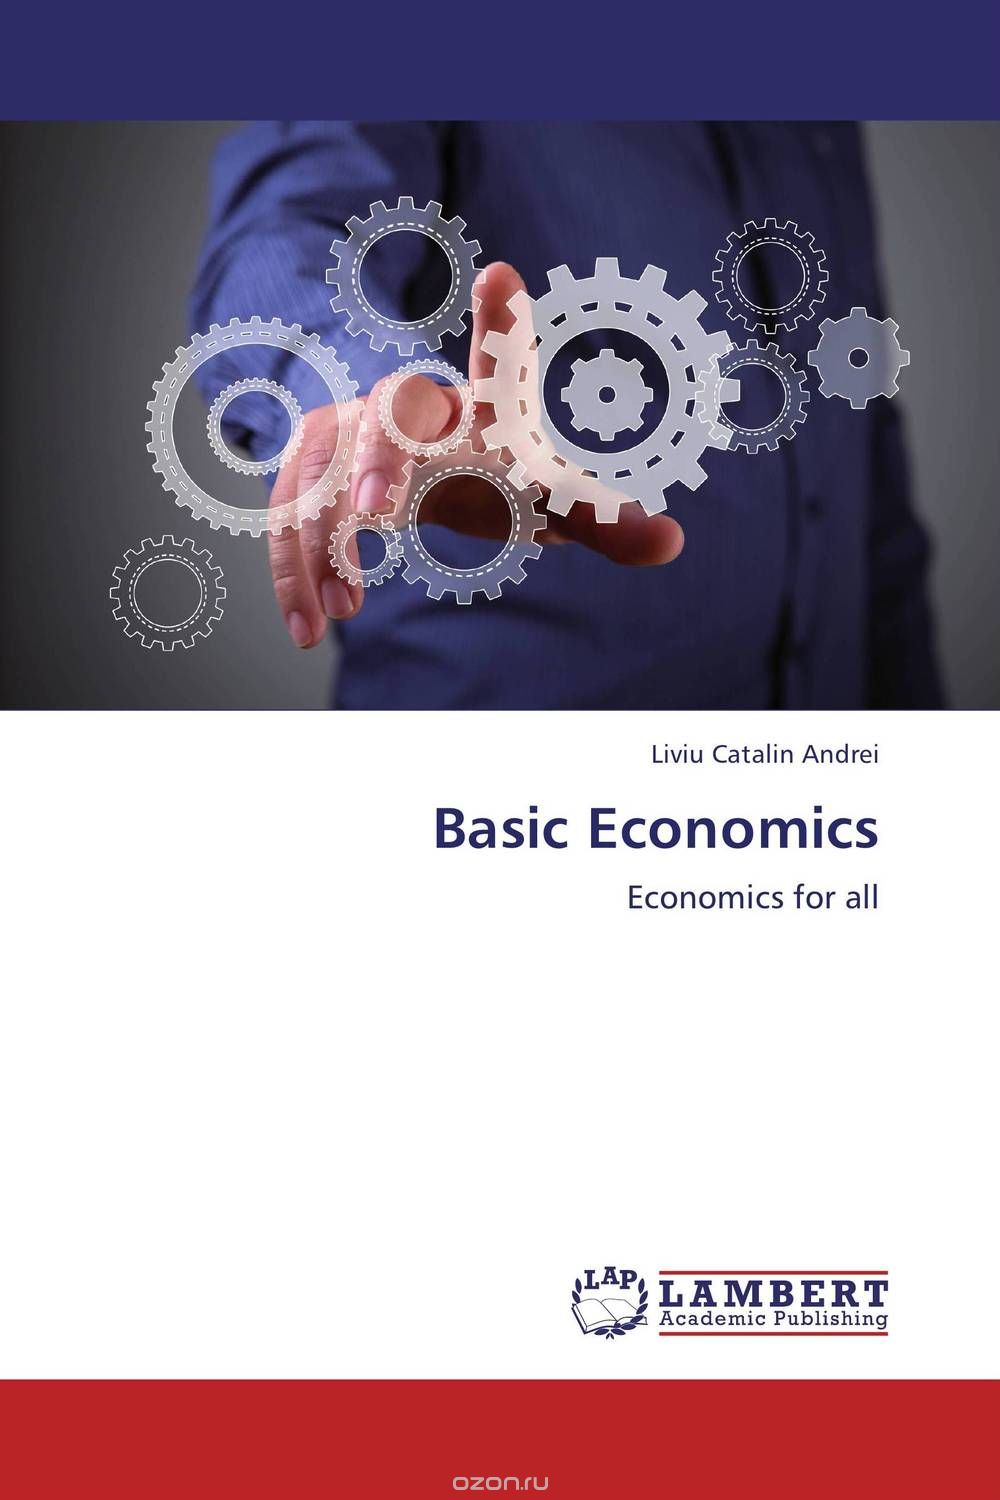 Скачать книгу "Basic Economics"